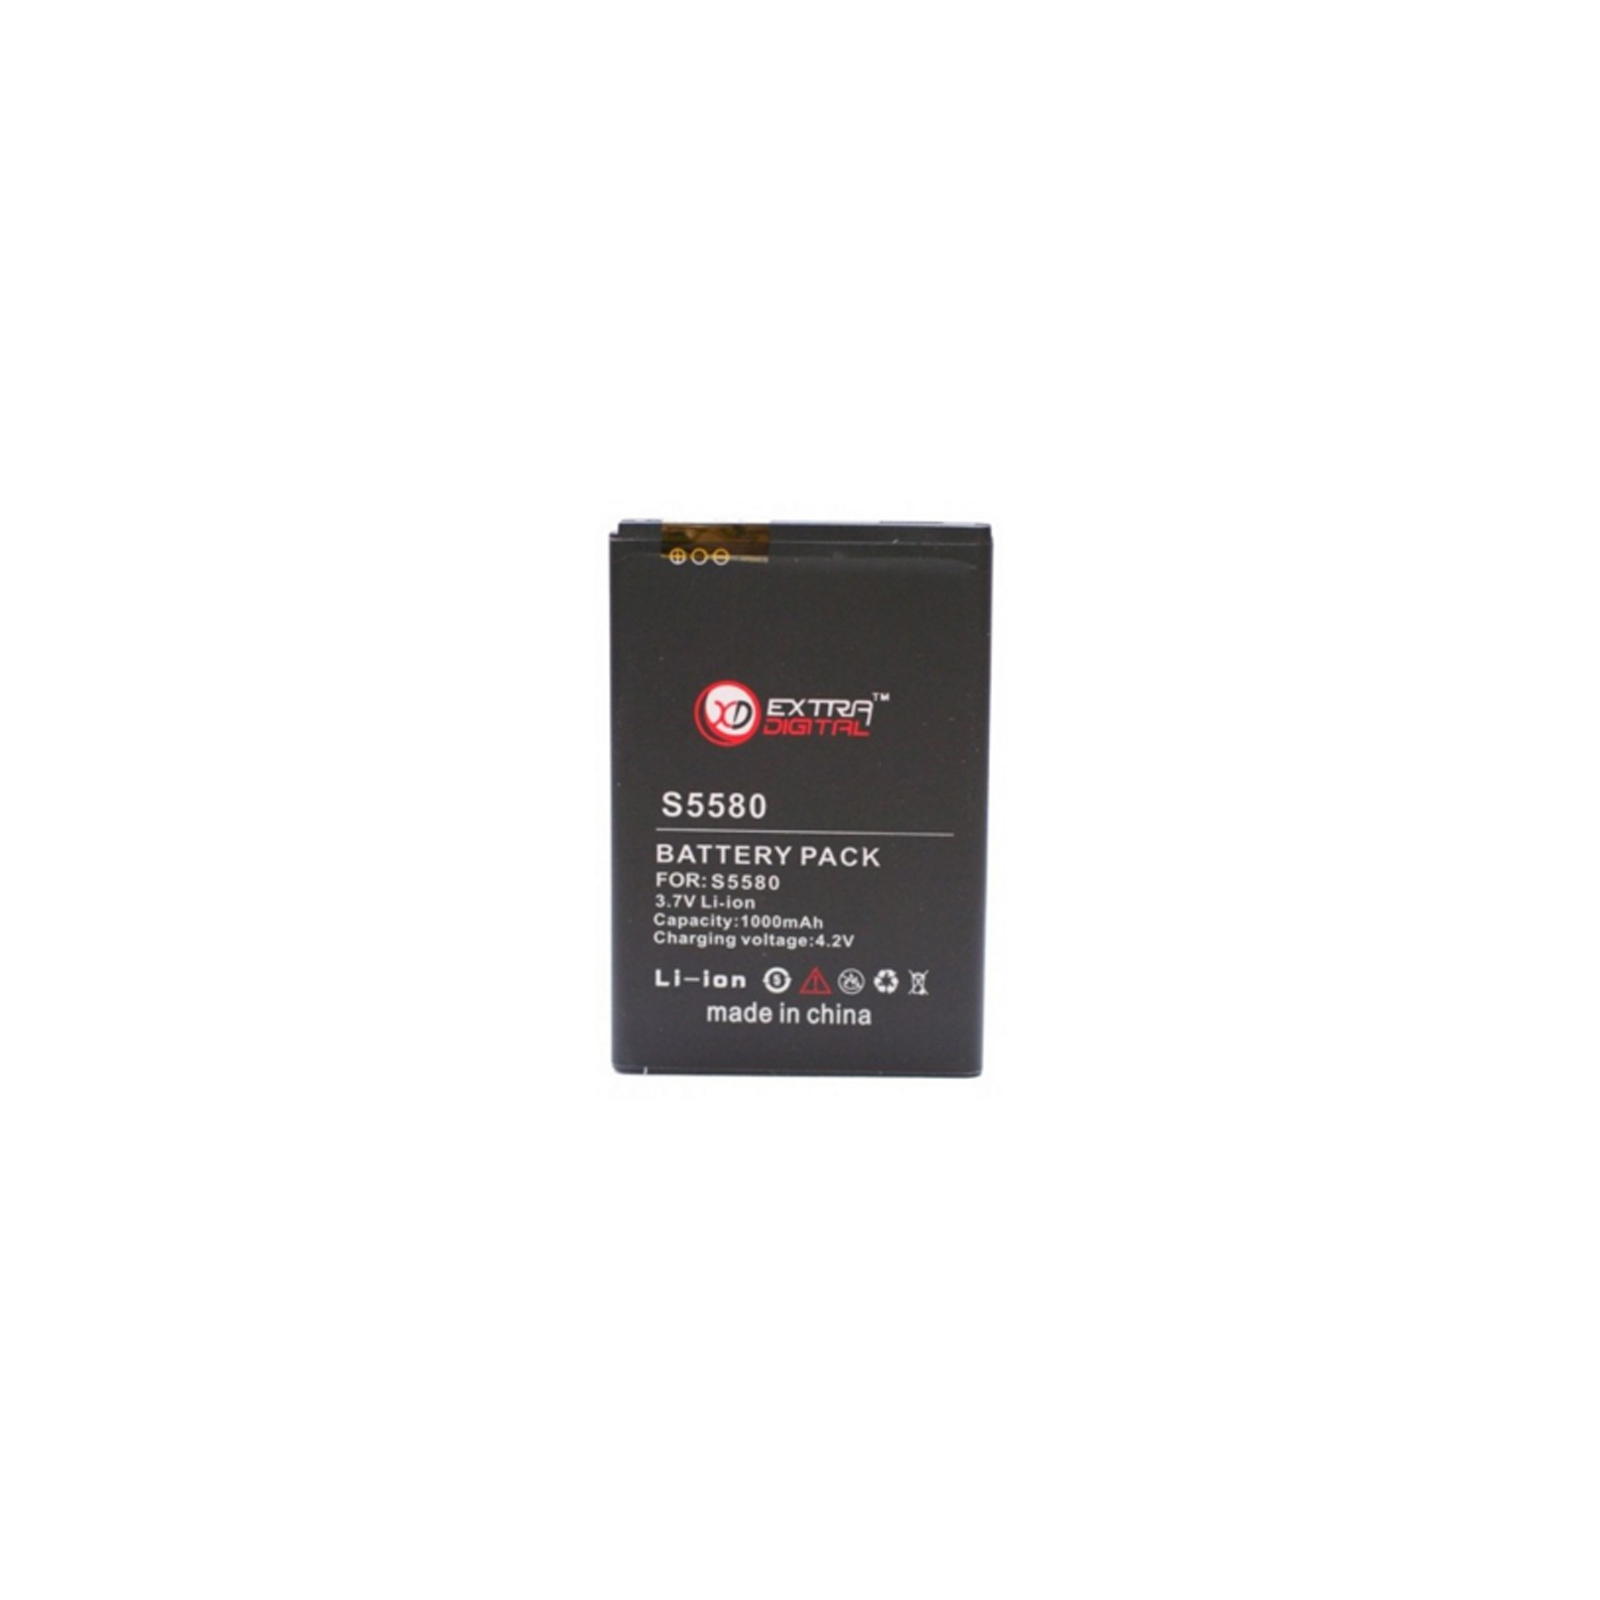 Акумуляторна батарея Extradigital Samsung SCH-W319 (1000 mAh) (DV00DV6113)